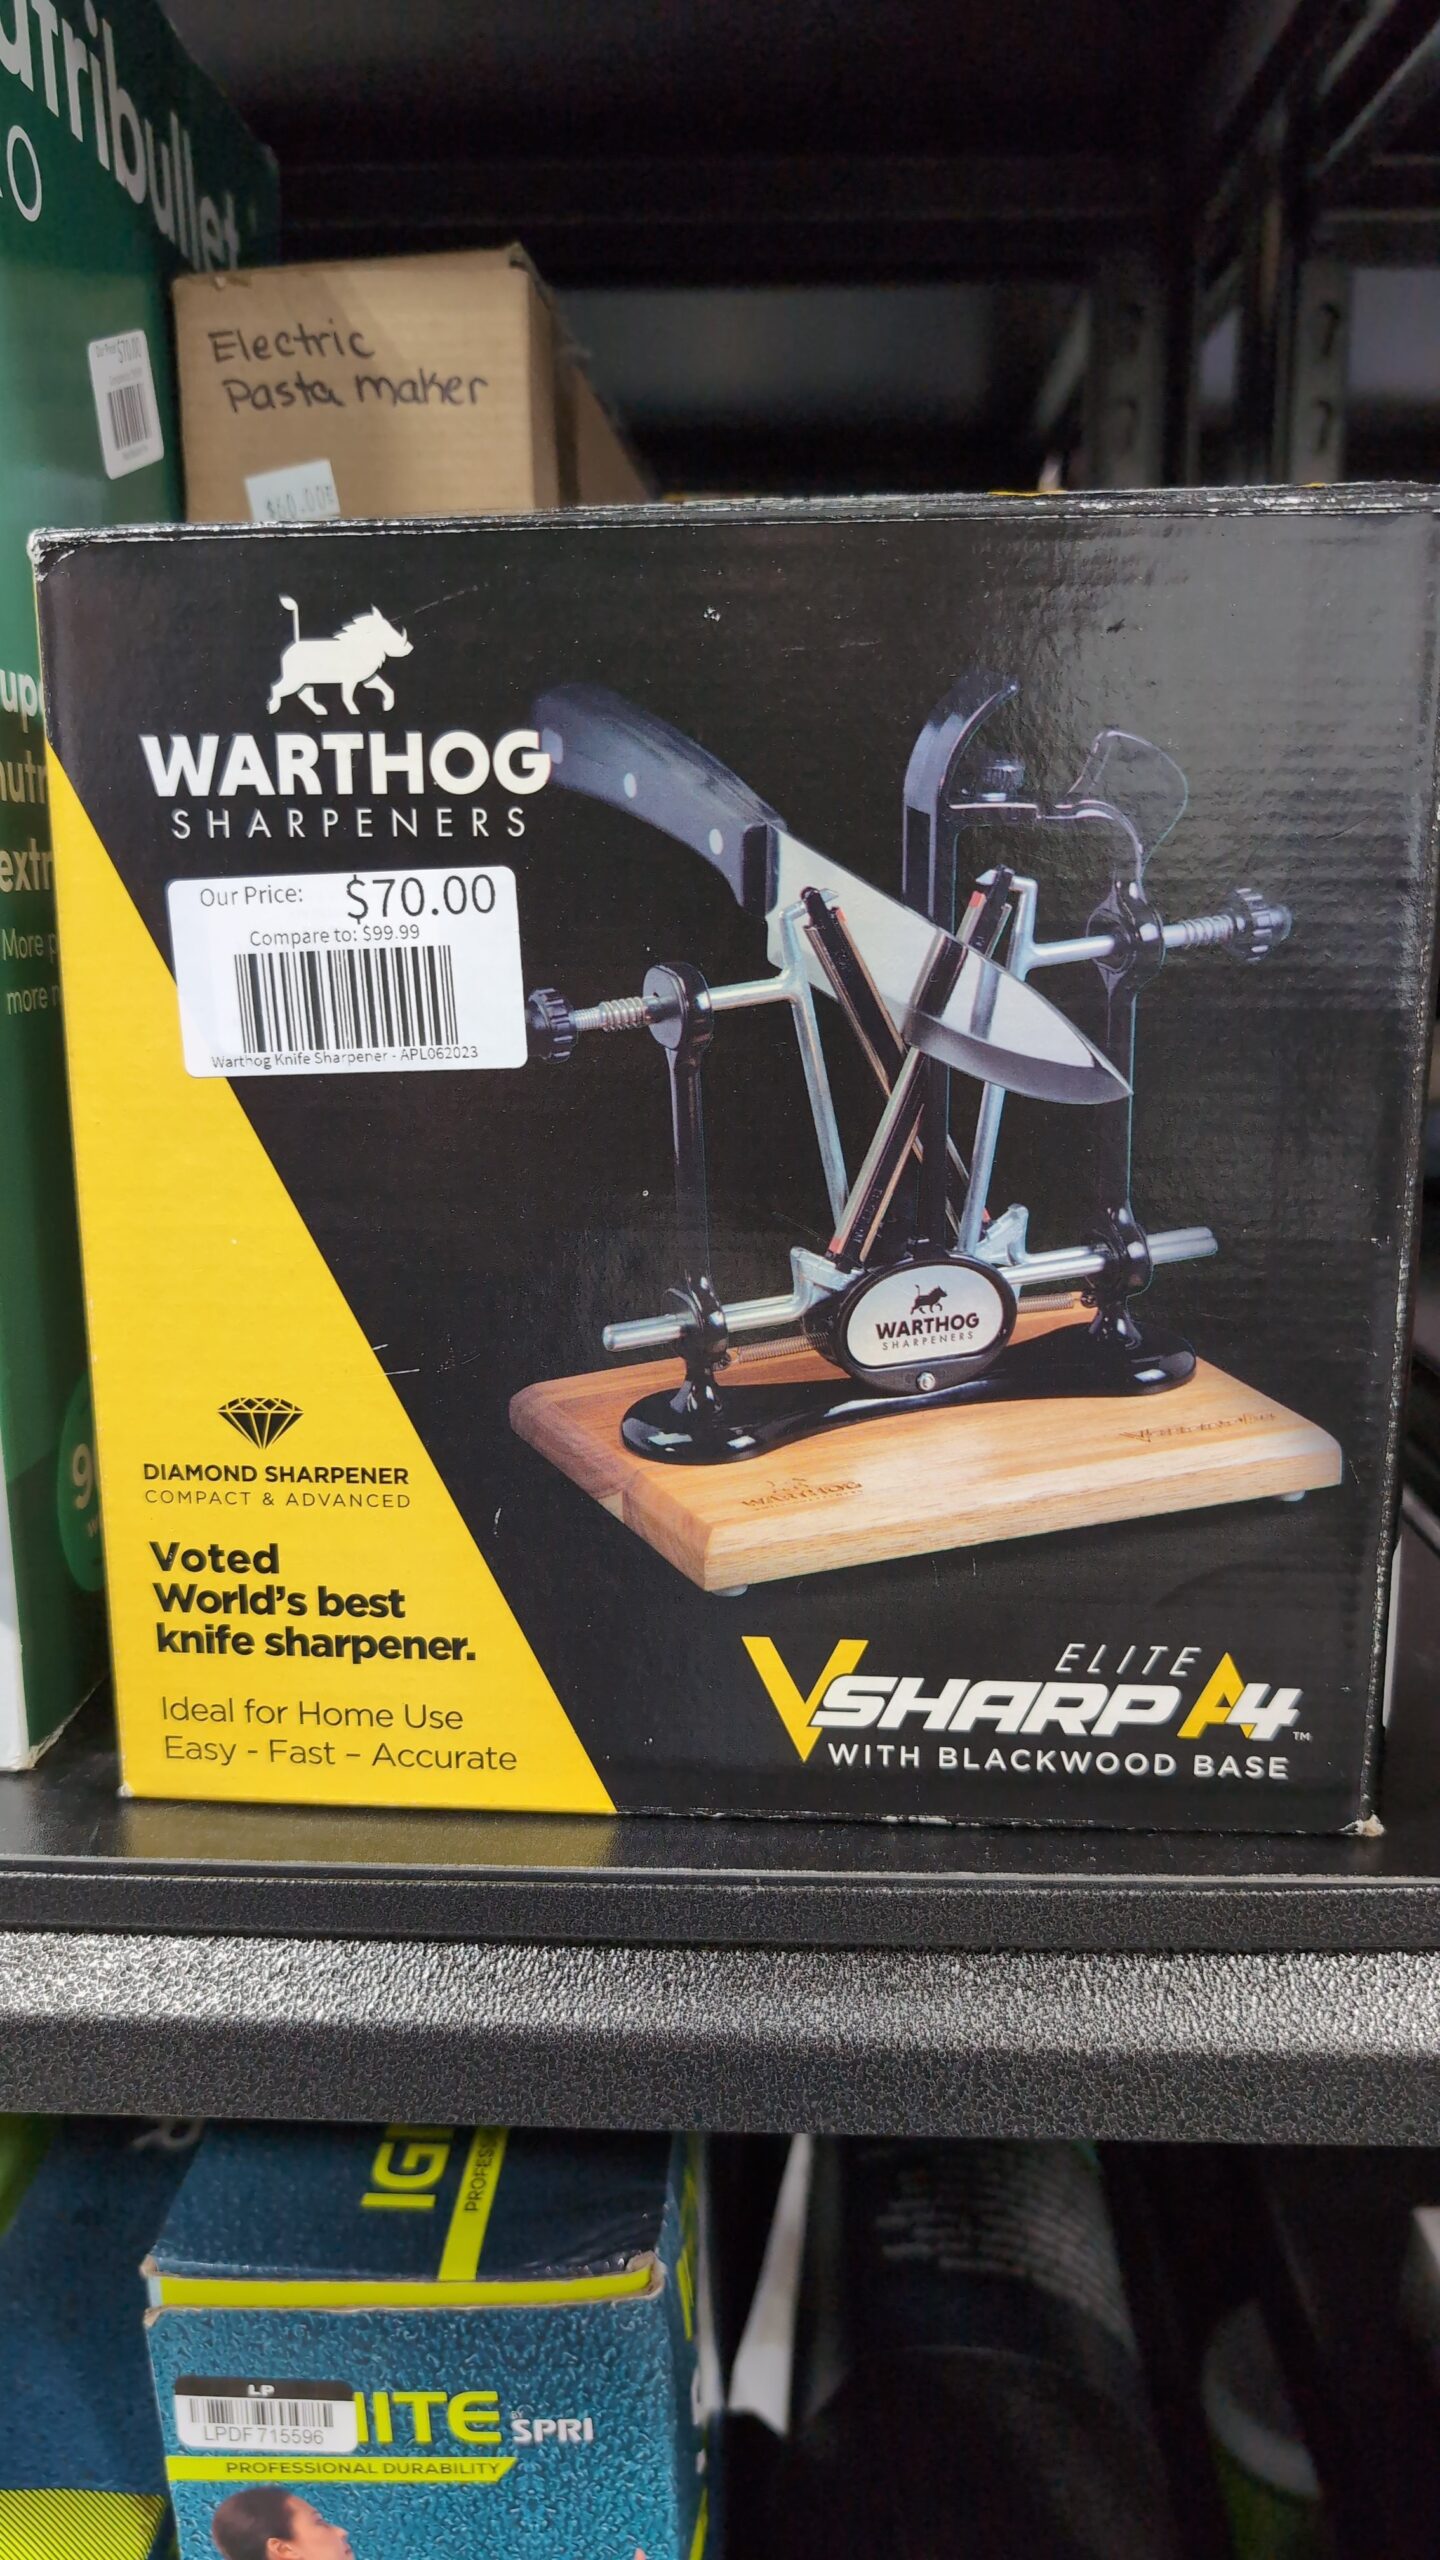 Warthog Elite V Sharp A4 w/ Blackwood Base Sharpener